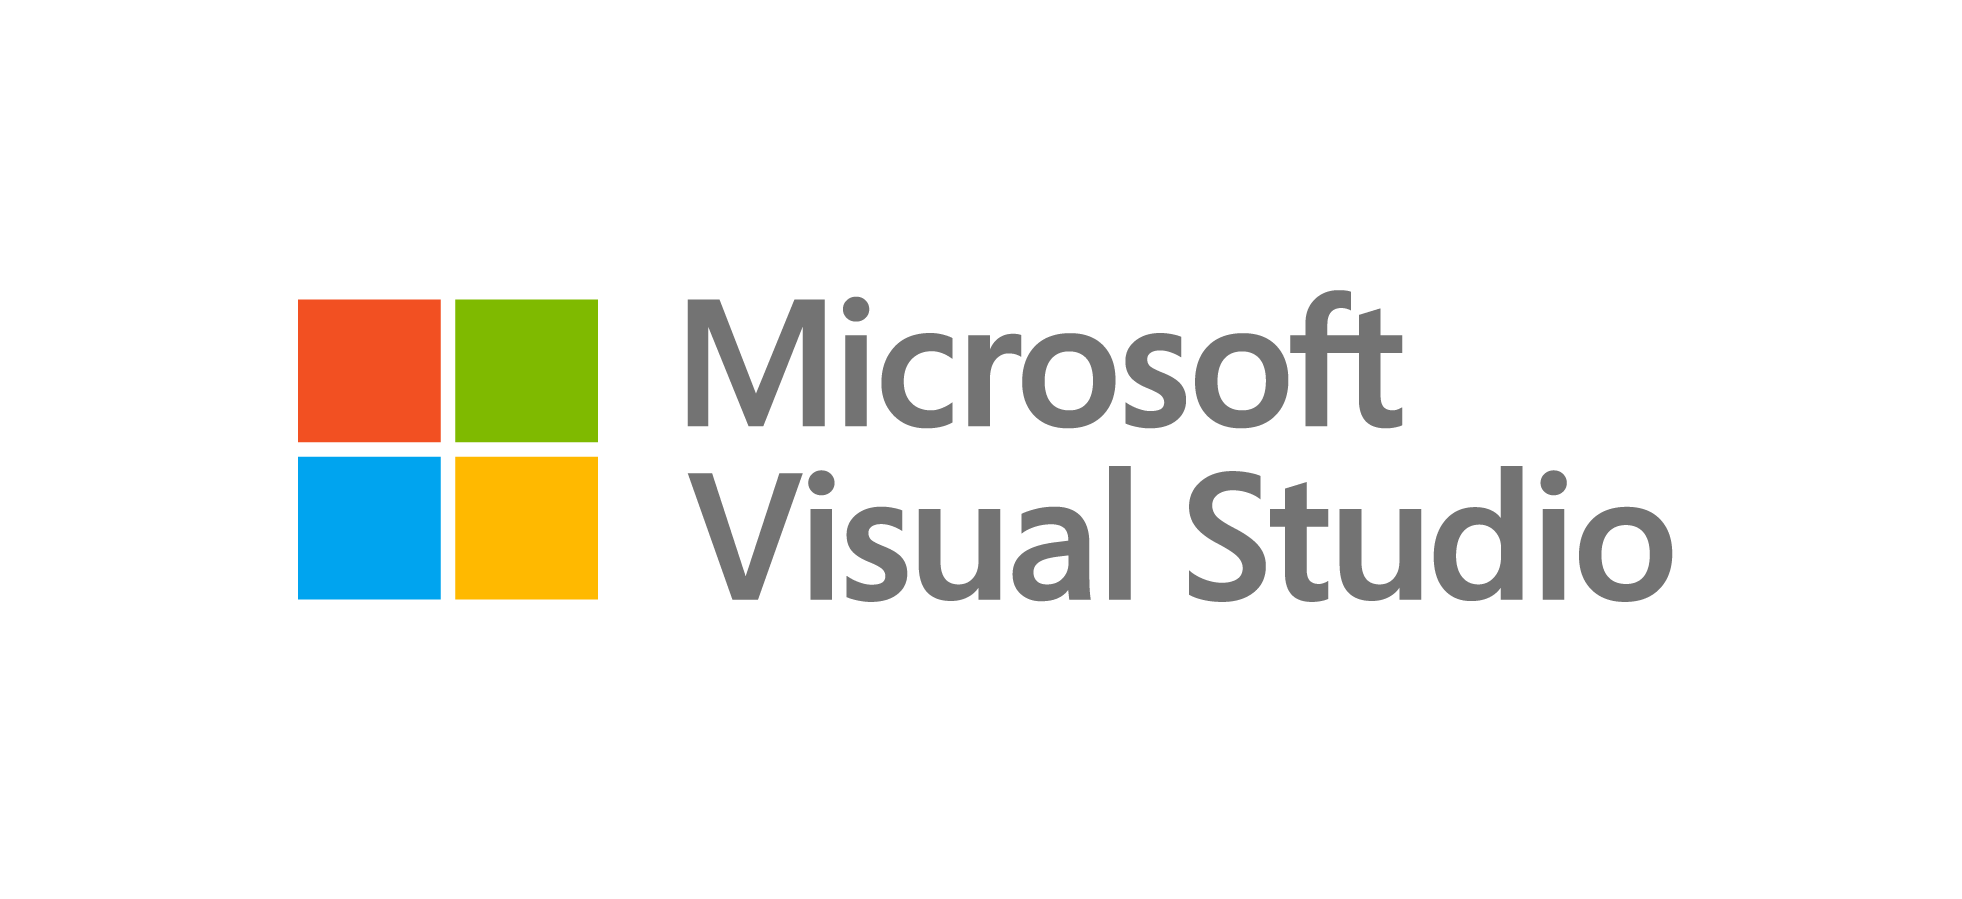 Visual Studio のロゴ